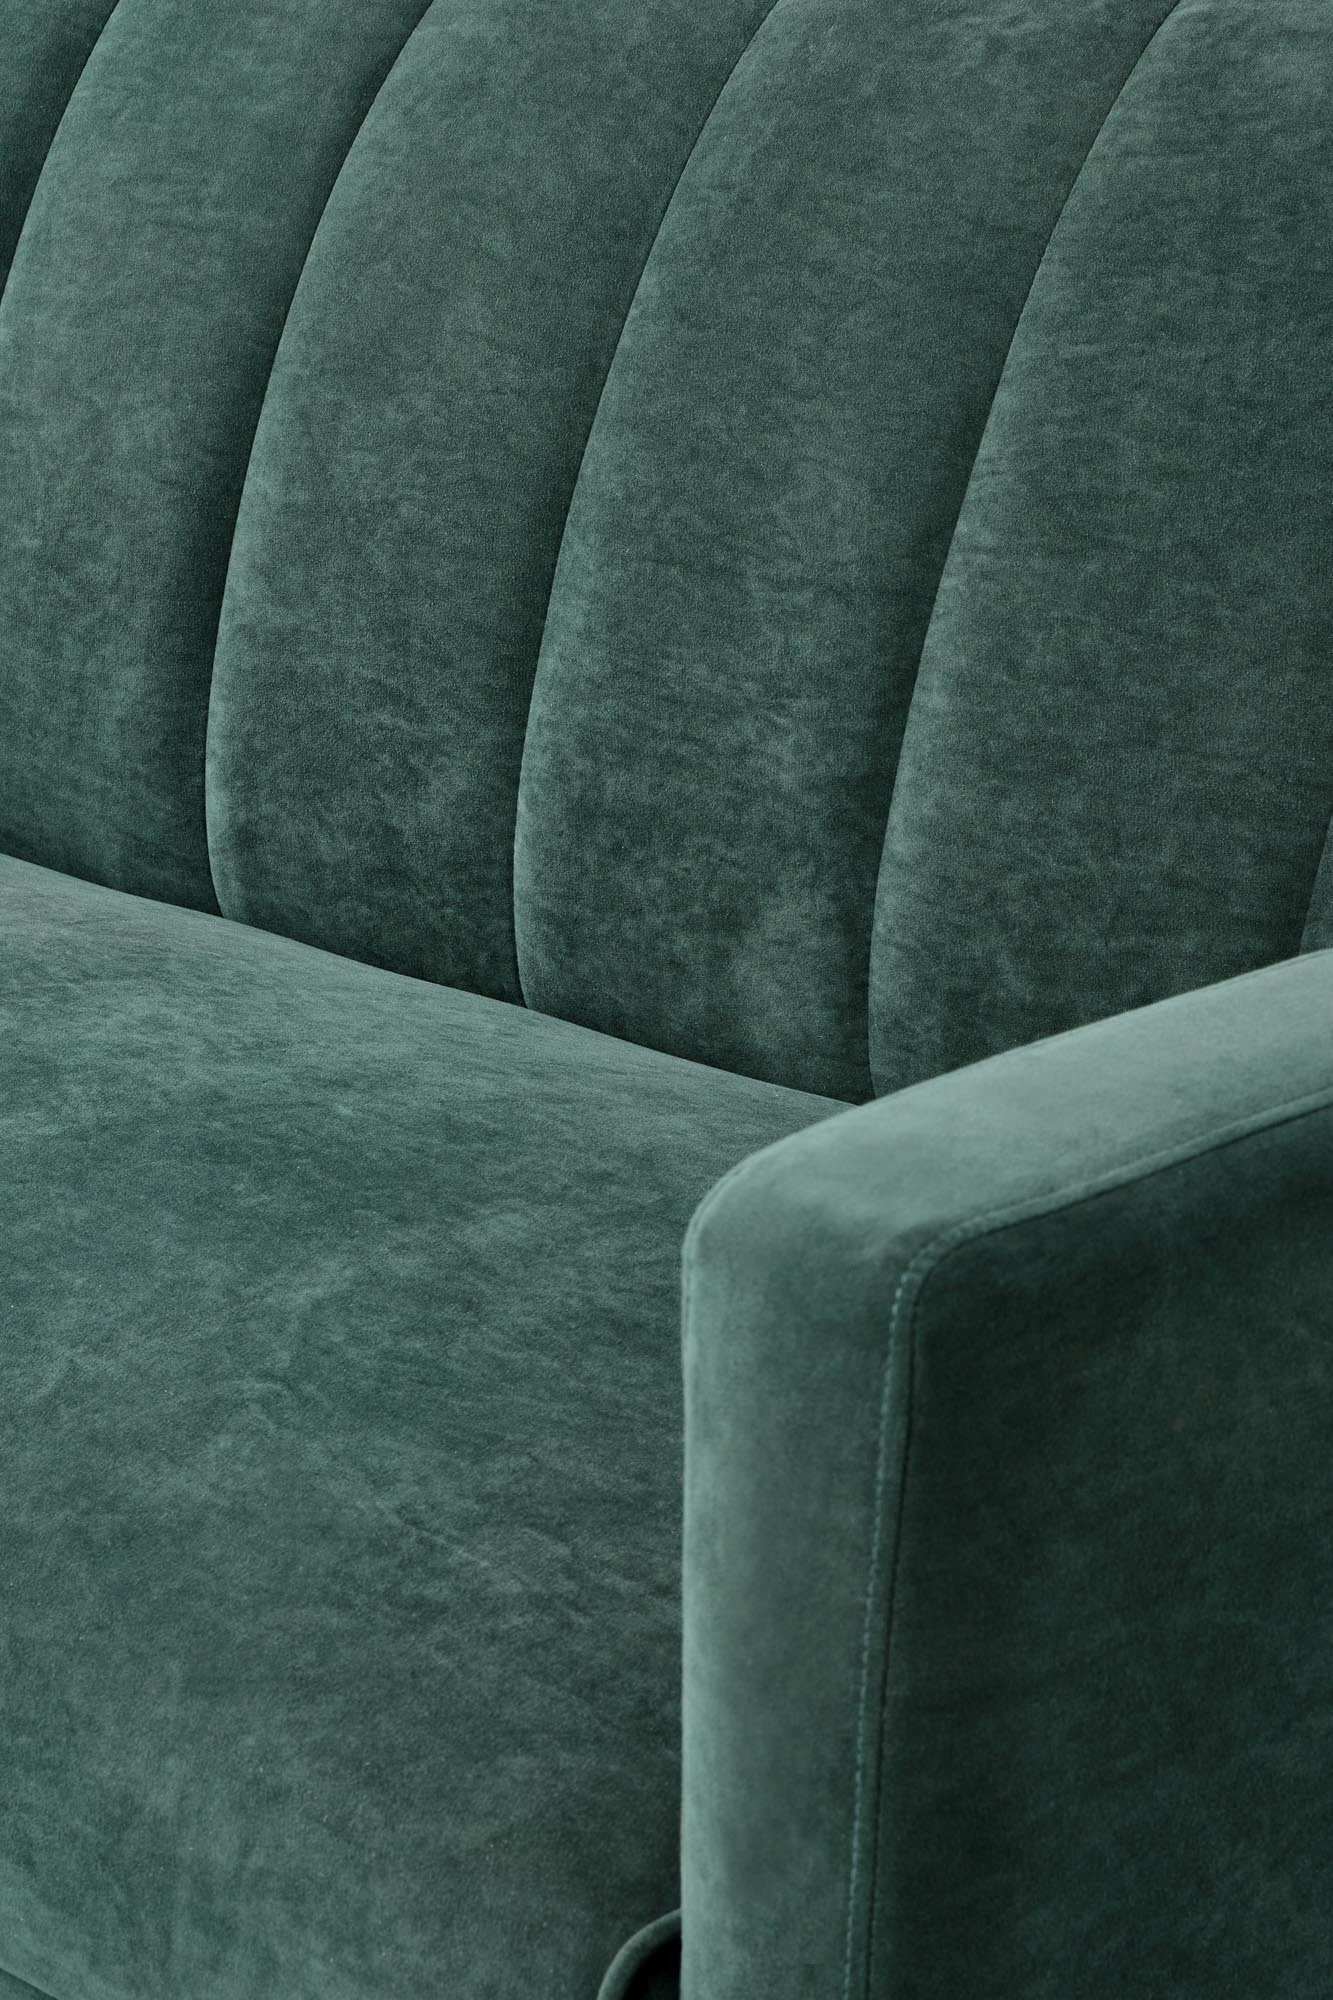 ARMANDO sofa ciemny zielony (1p=1szt)